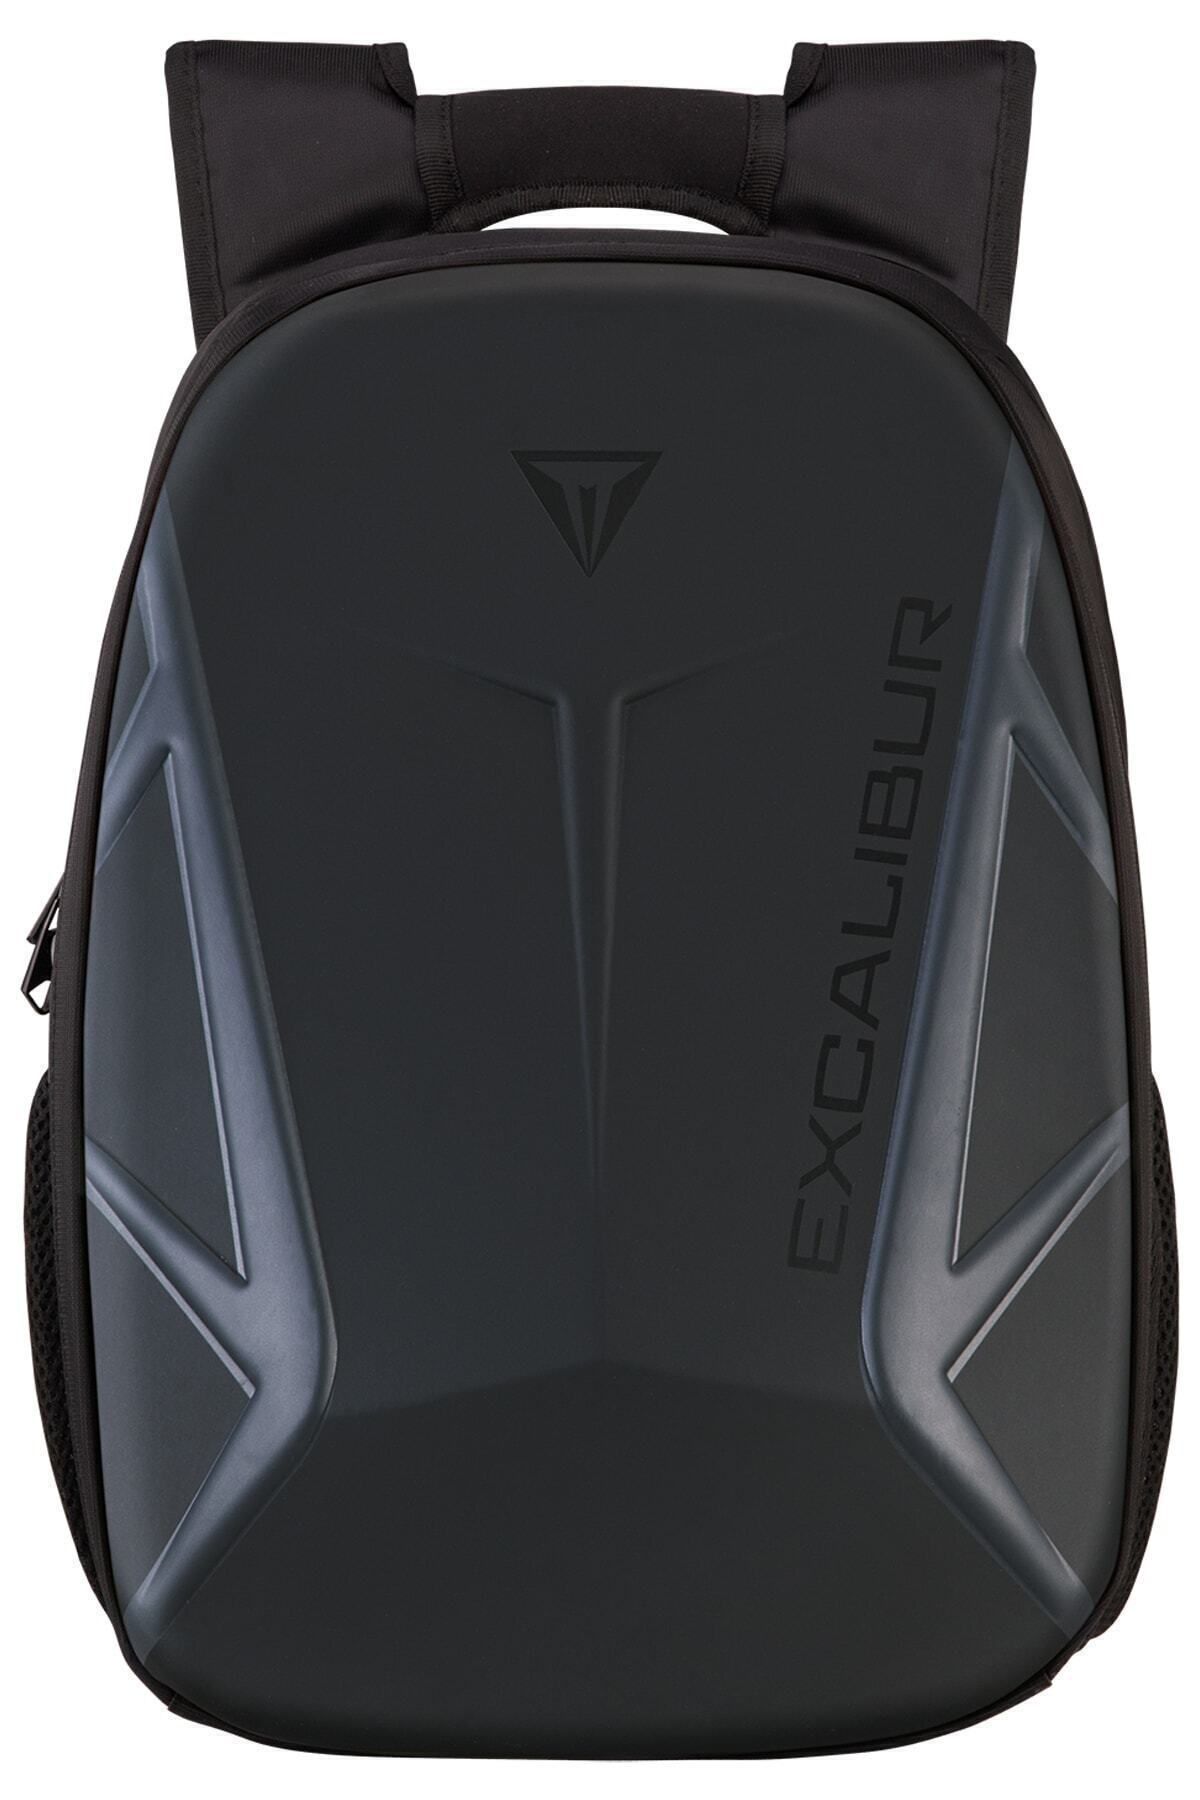 Casper Excalibur 16" Siyah Laptop Sırt Çantası (Siyah logolu)